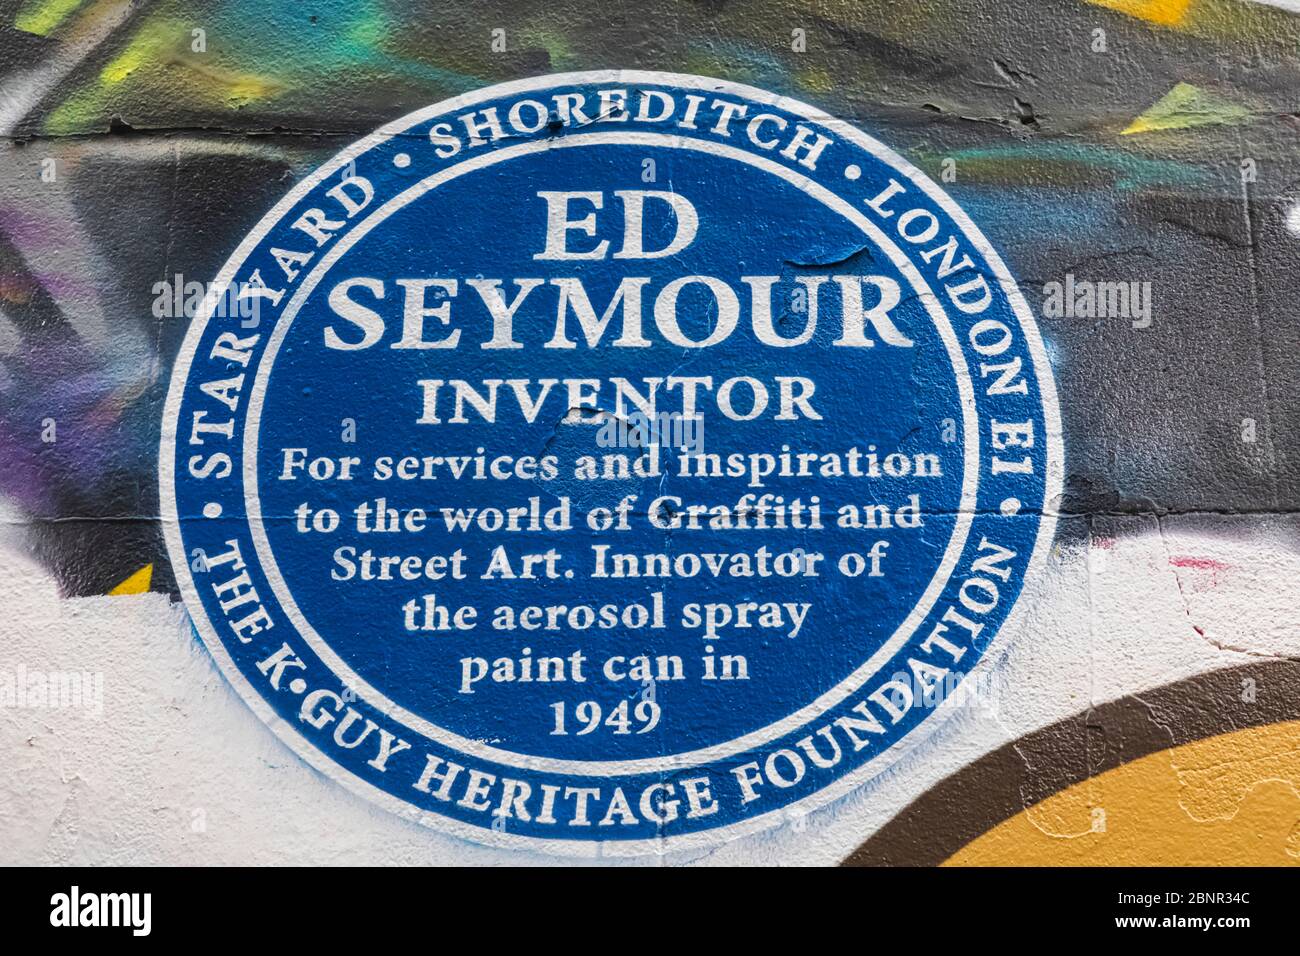 Angleterre, Londres, Shoreditch, Wall Art représentant la plaque bleue pour Ed Seymour Inovator de la Bombe aérosol de peinture en 1949 Banque D'Images